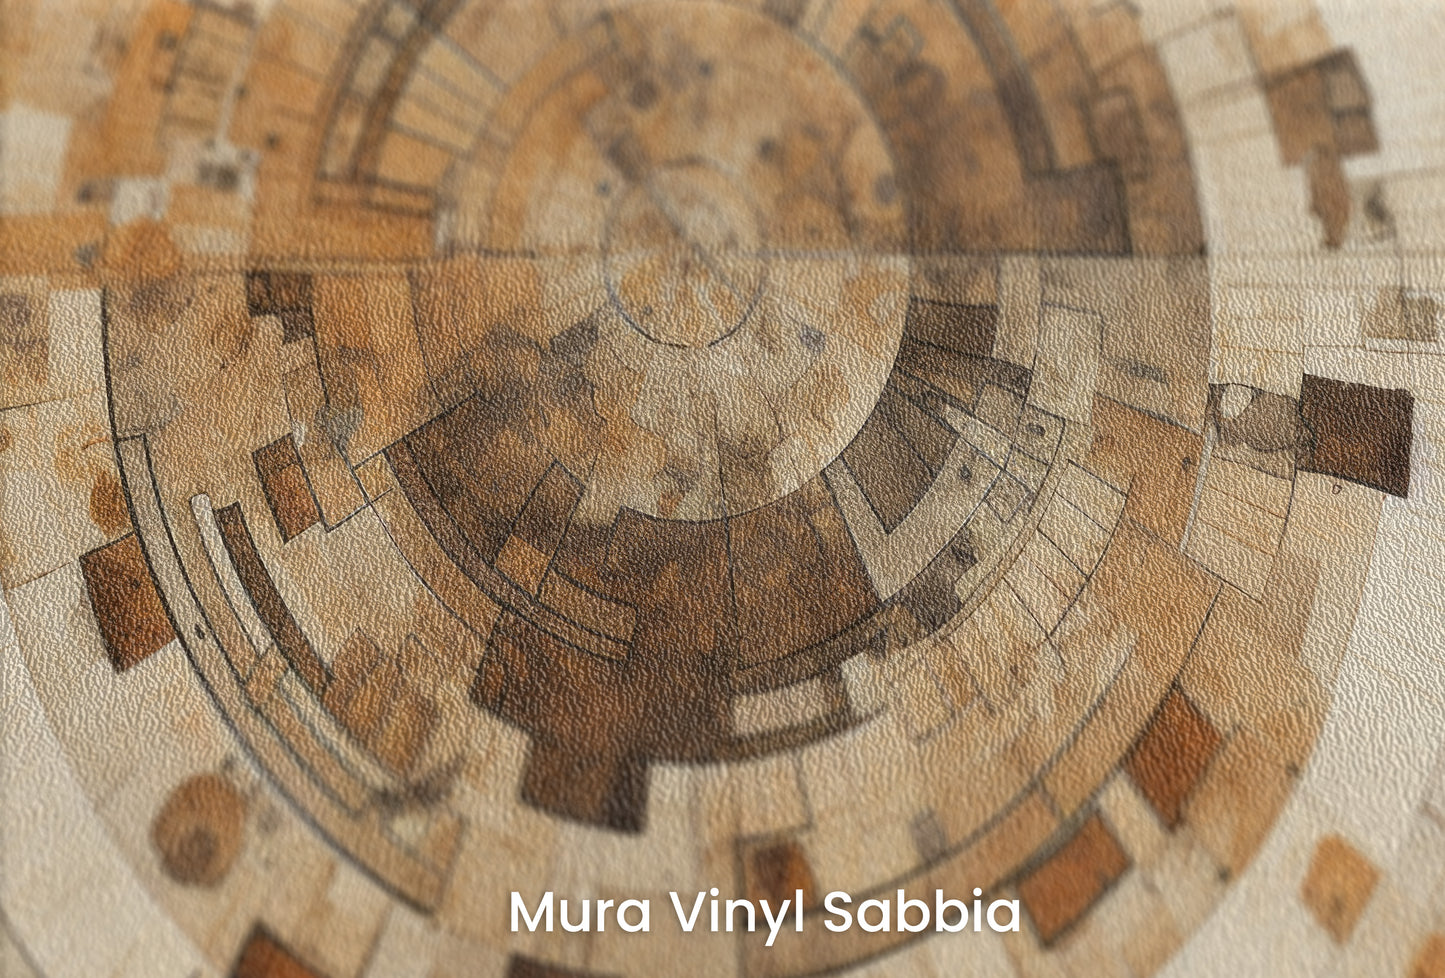 Zbliżenie na artystyczną fototapetę o nazwie ARCHAIC NAVIGATION MAP na podłożu Mura Vinyl Sabbia struktura grubego ziarna piasku.